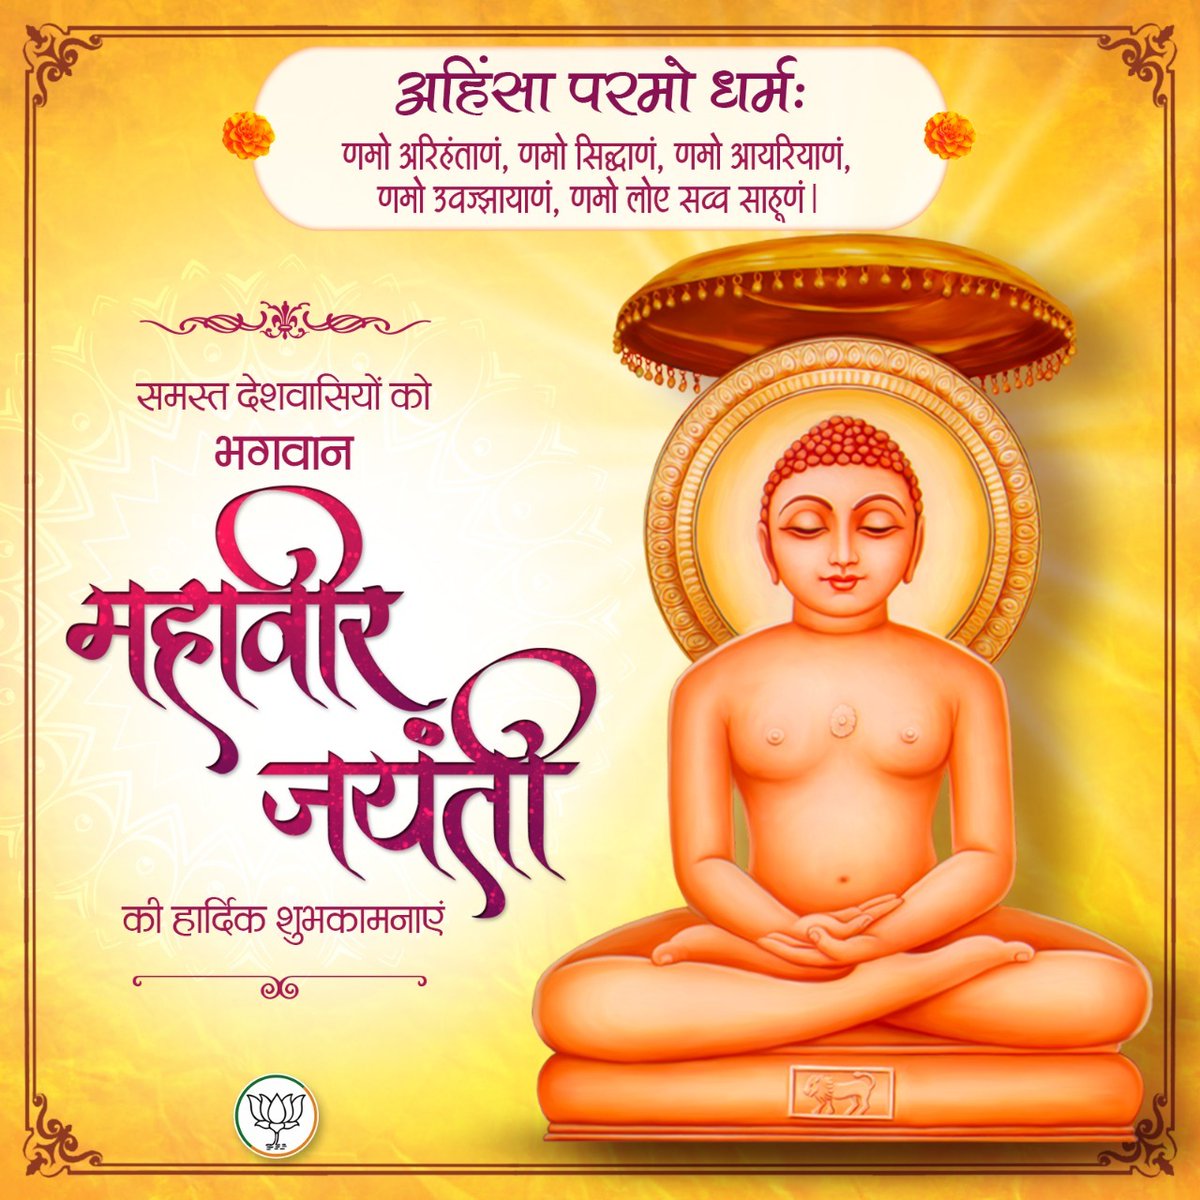 RT @BalbeerBishnoi: भगवान महावीर जयंती की हार्दिक शुभकामनाएं।
#MahavirJayanti...